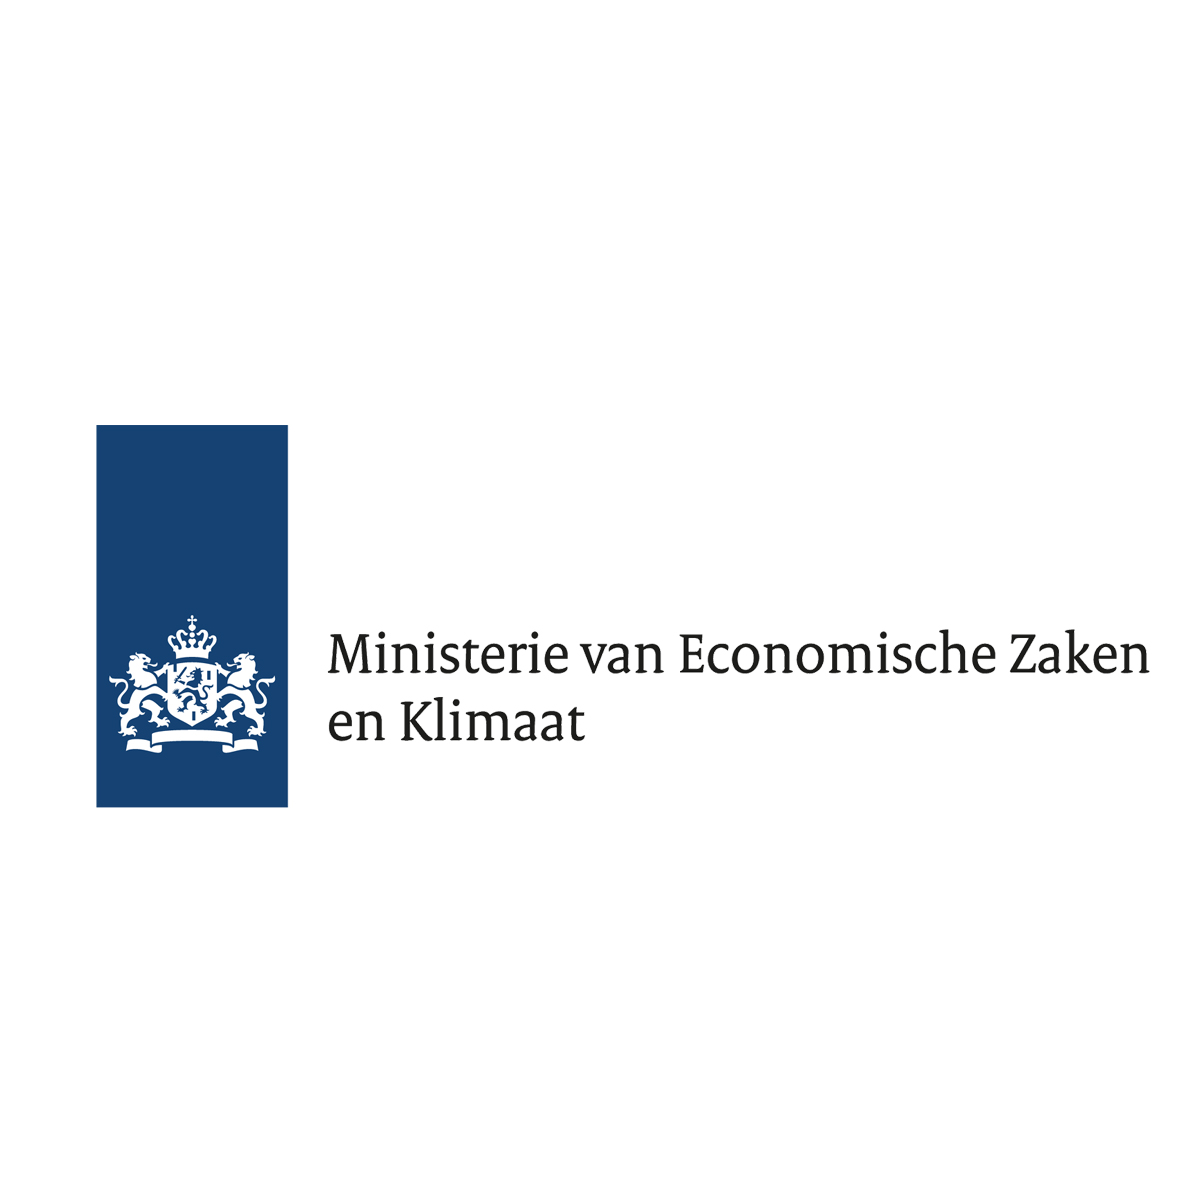 Ministerie van Economische Zaken en Klimaat logo